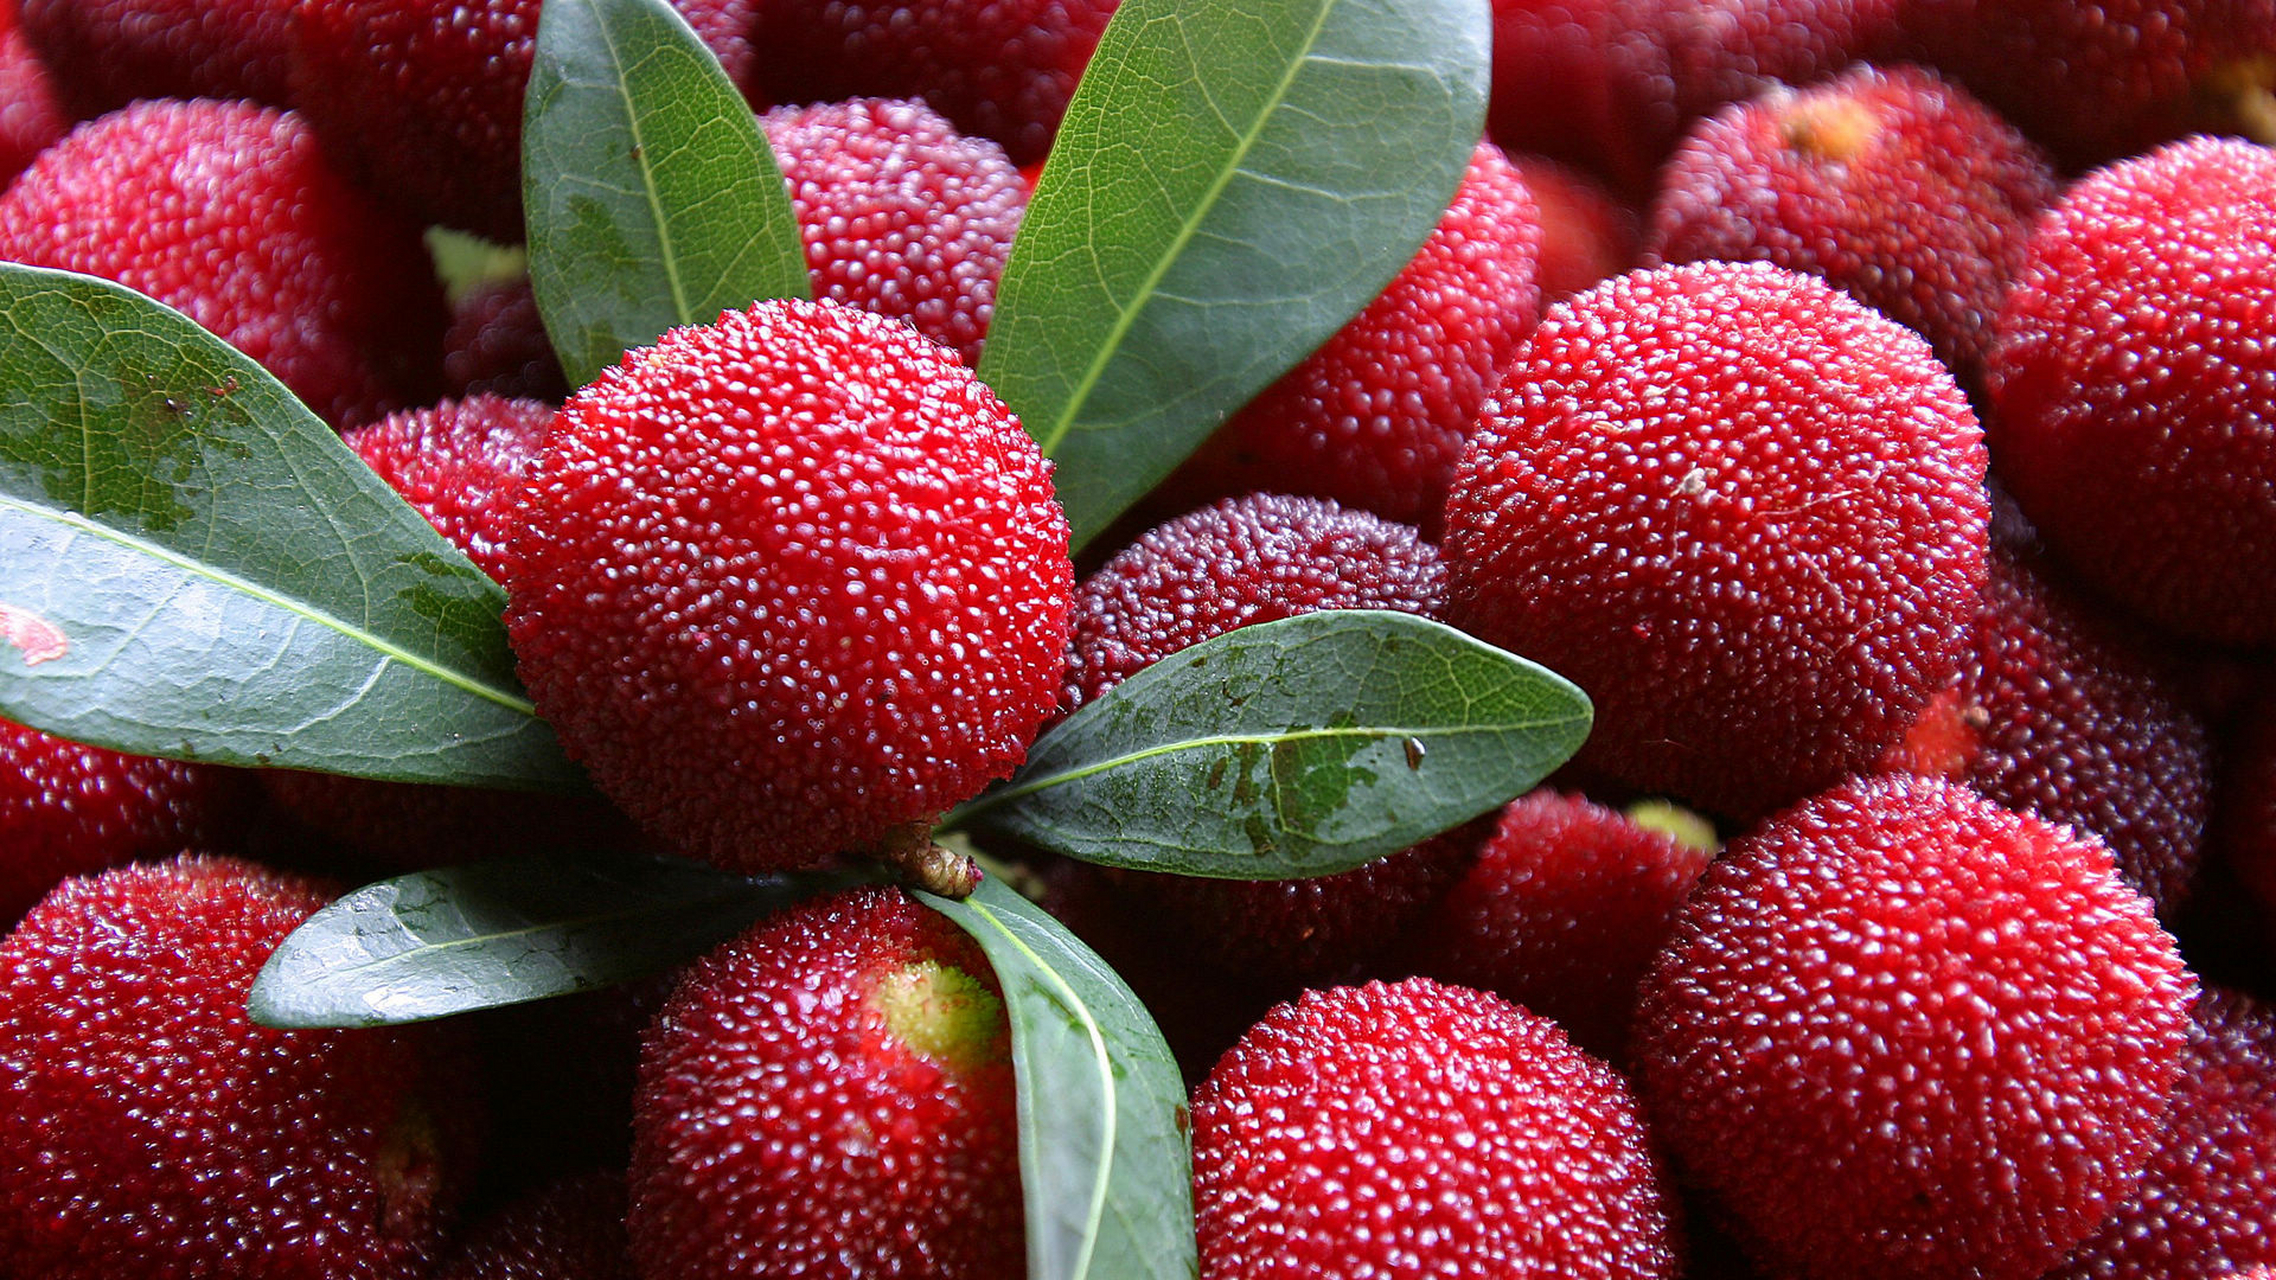 杨梅是一种营养丰富的水果,含有多种维生素和矿物质,如维生素c